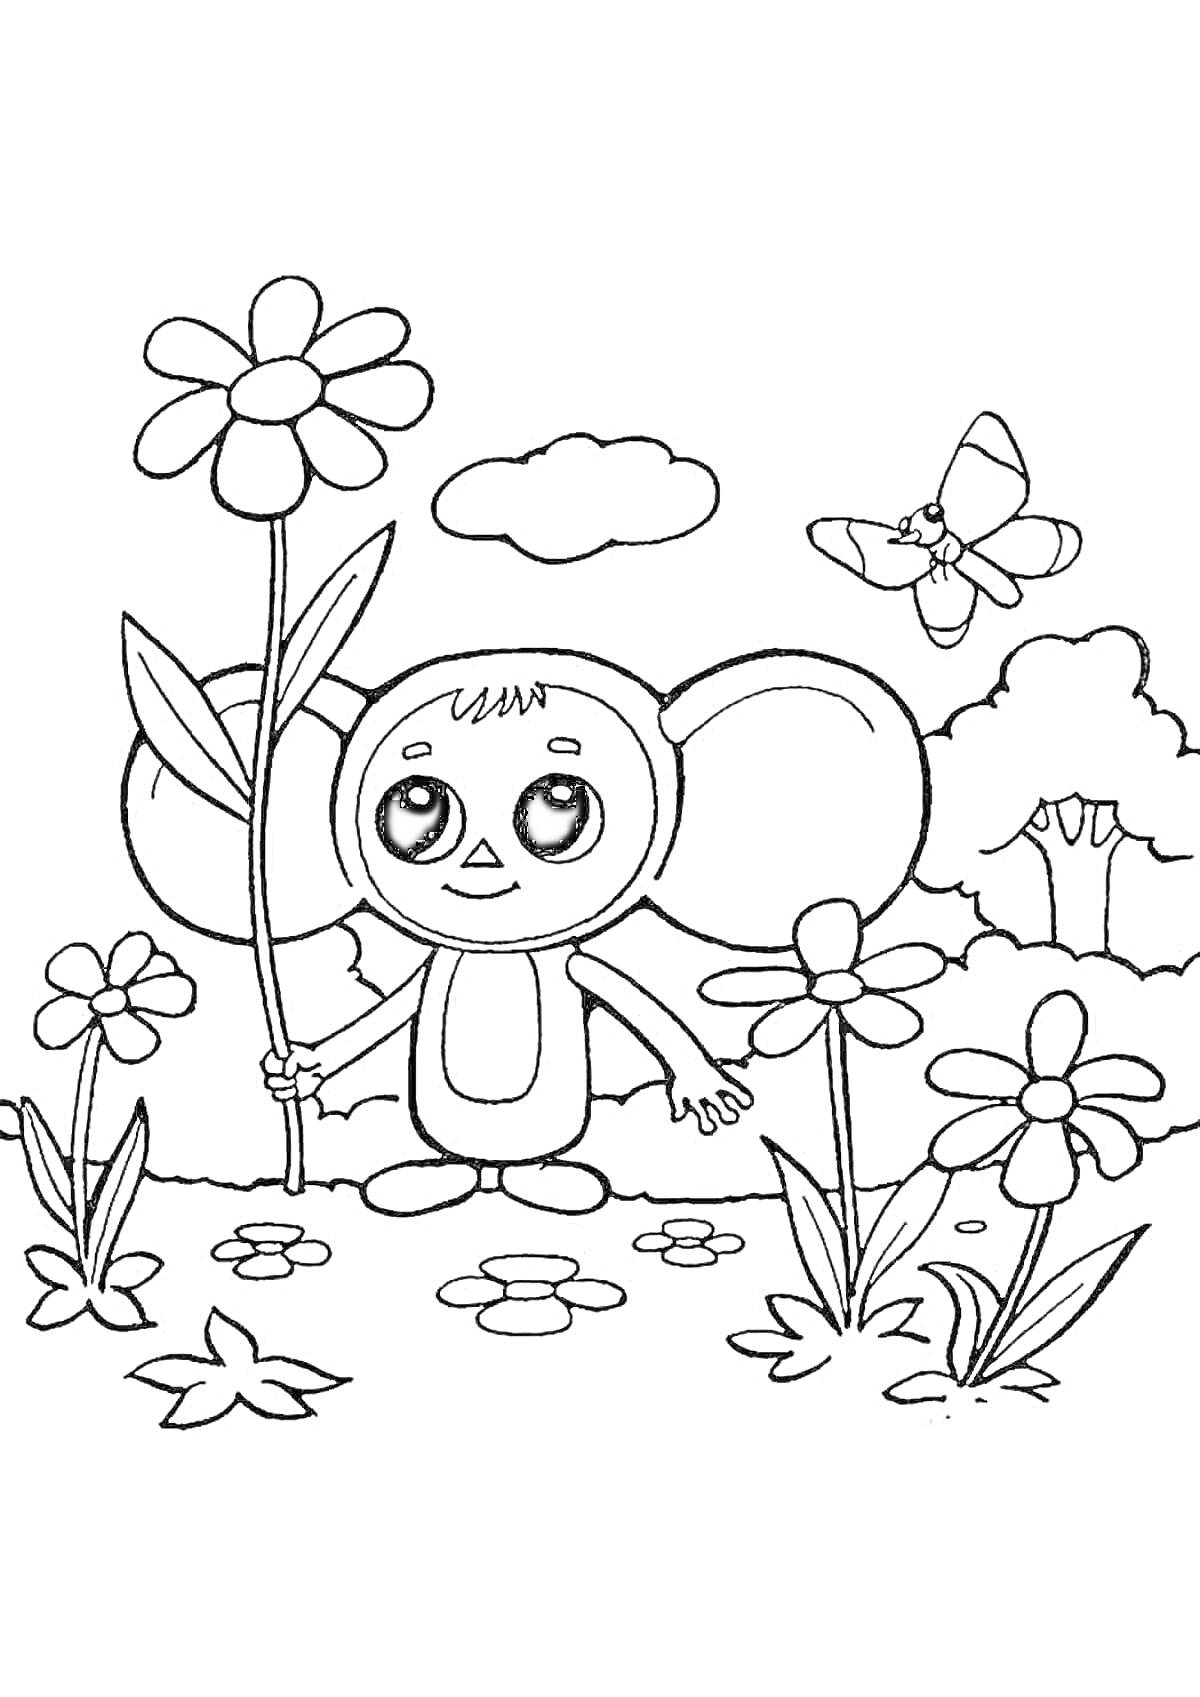 Раскраска Персонаж с большим ушами с цветком, цветы, бабочка, дерево, облако